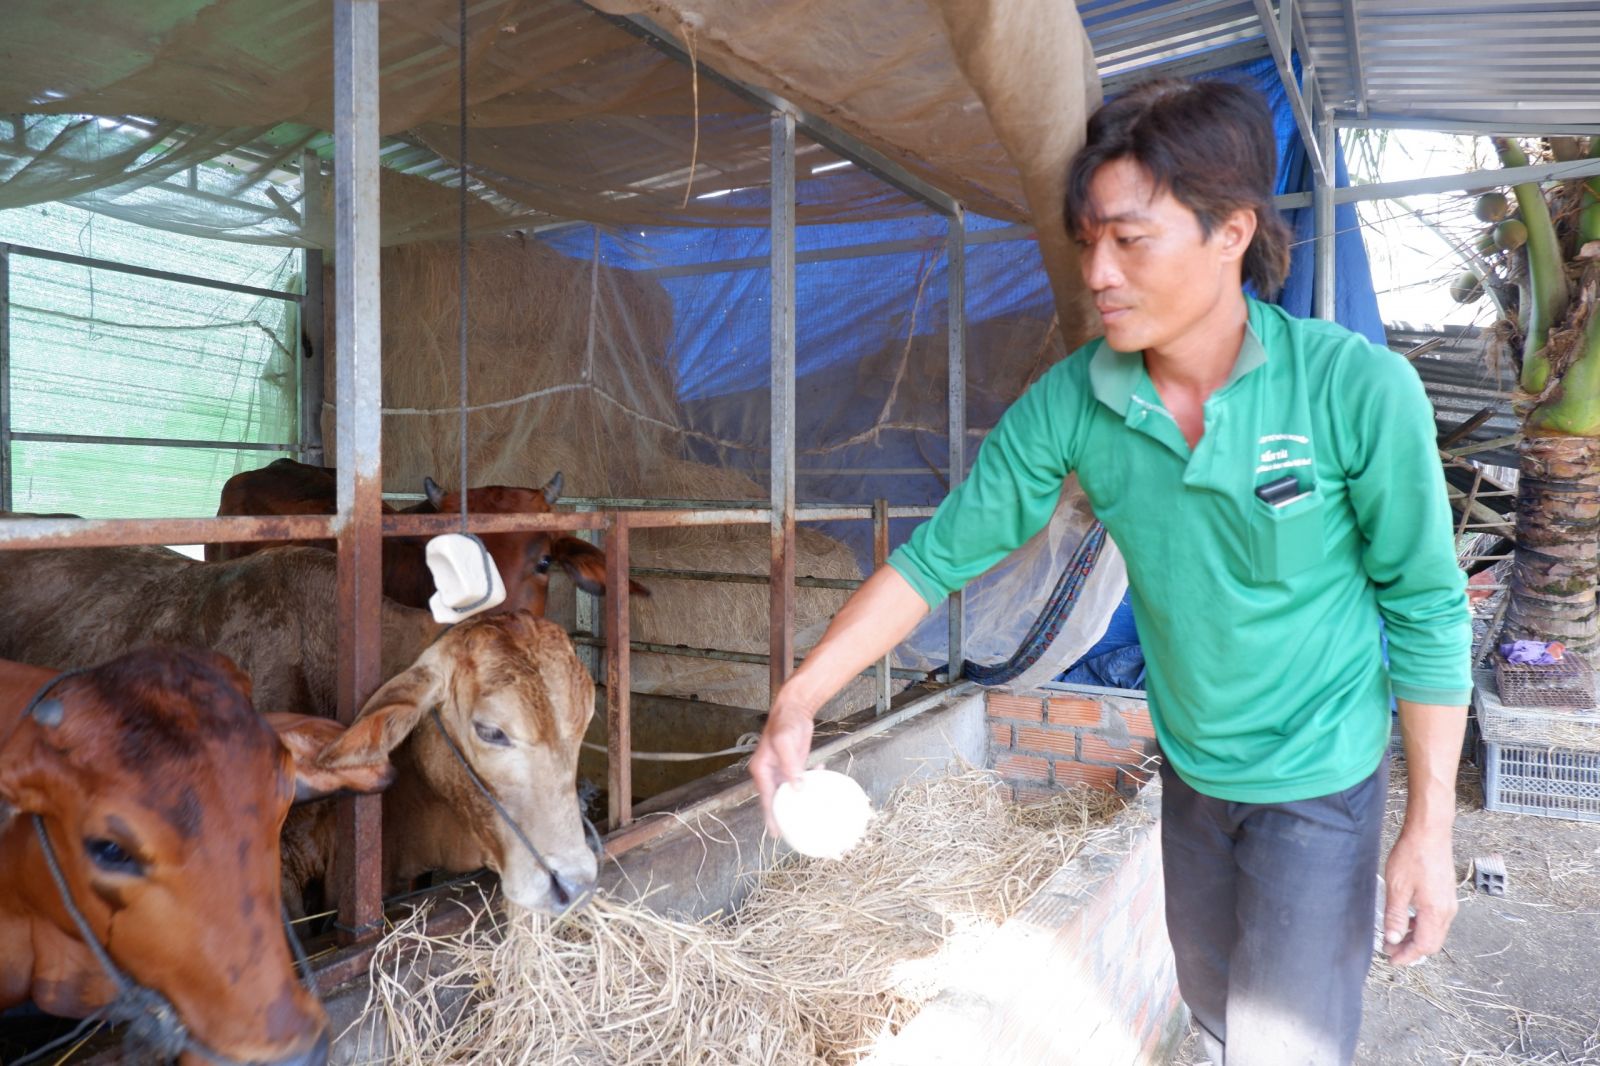 Nhờ nguồn vốn tín dụng chính sách xã hội, anh Võ Văn Giang có điều kiện chăn nuôi, ổn định cuộc sống